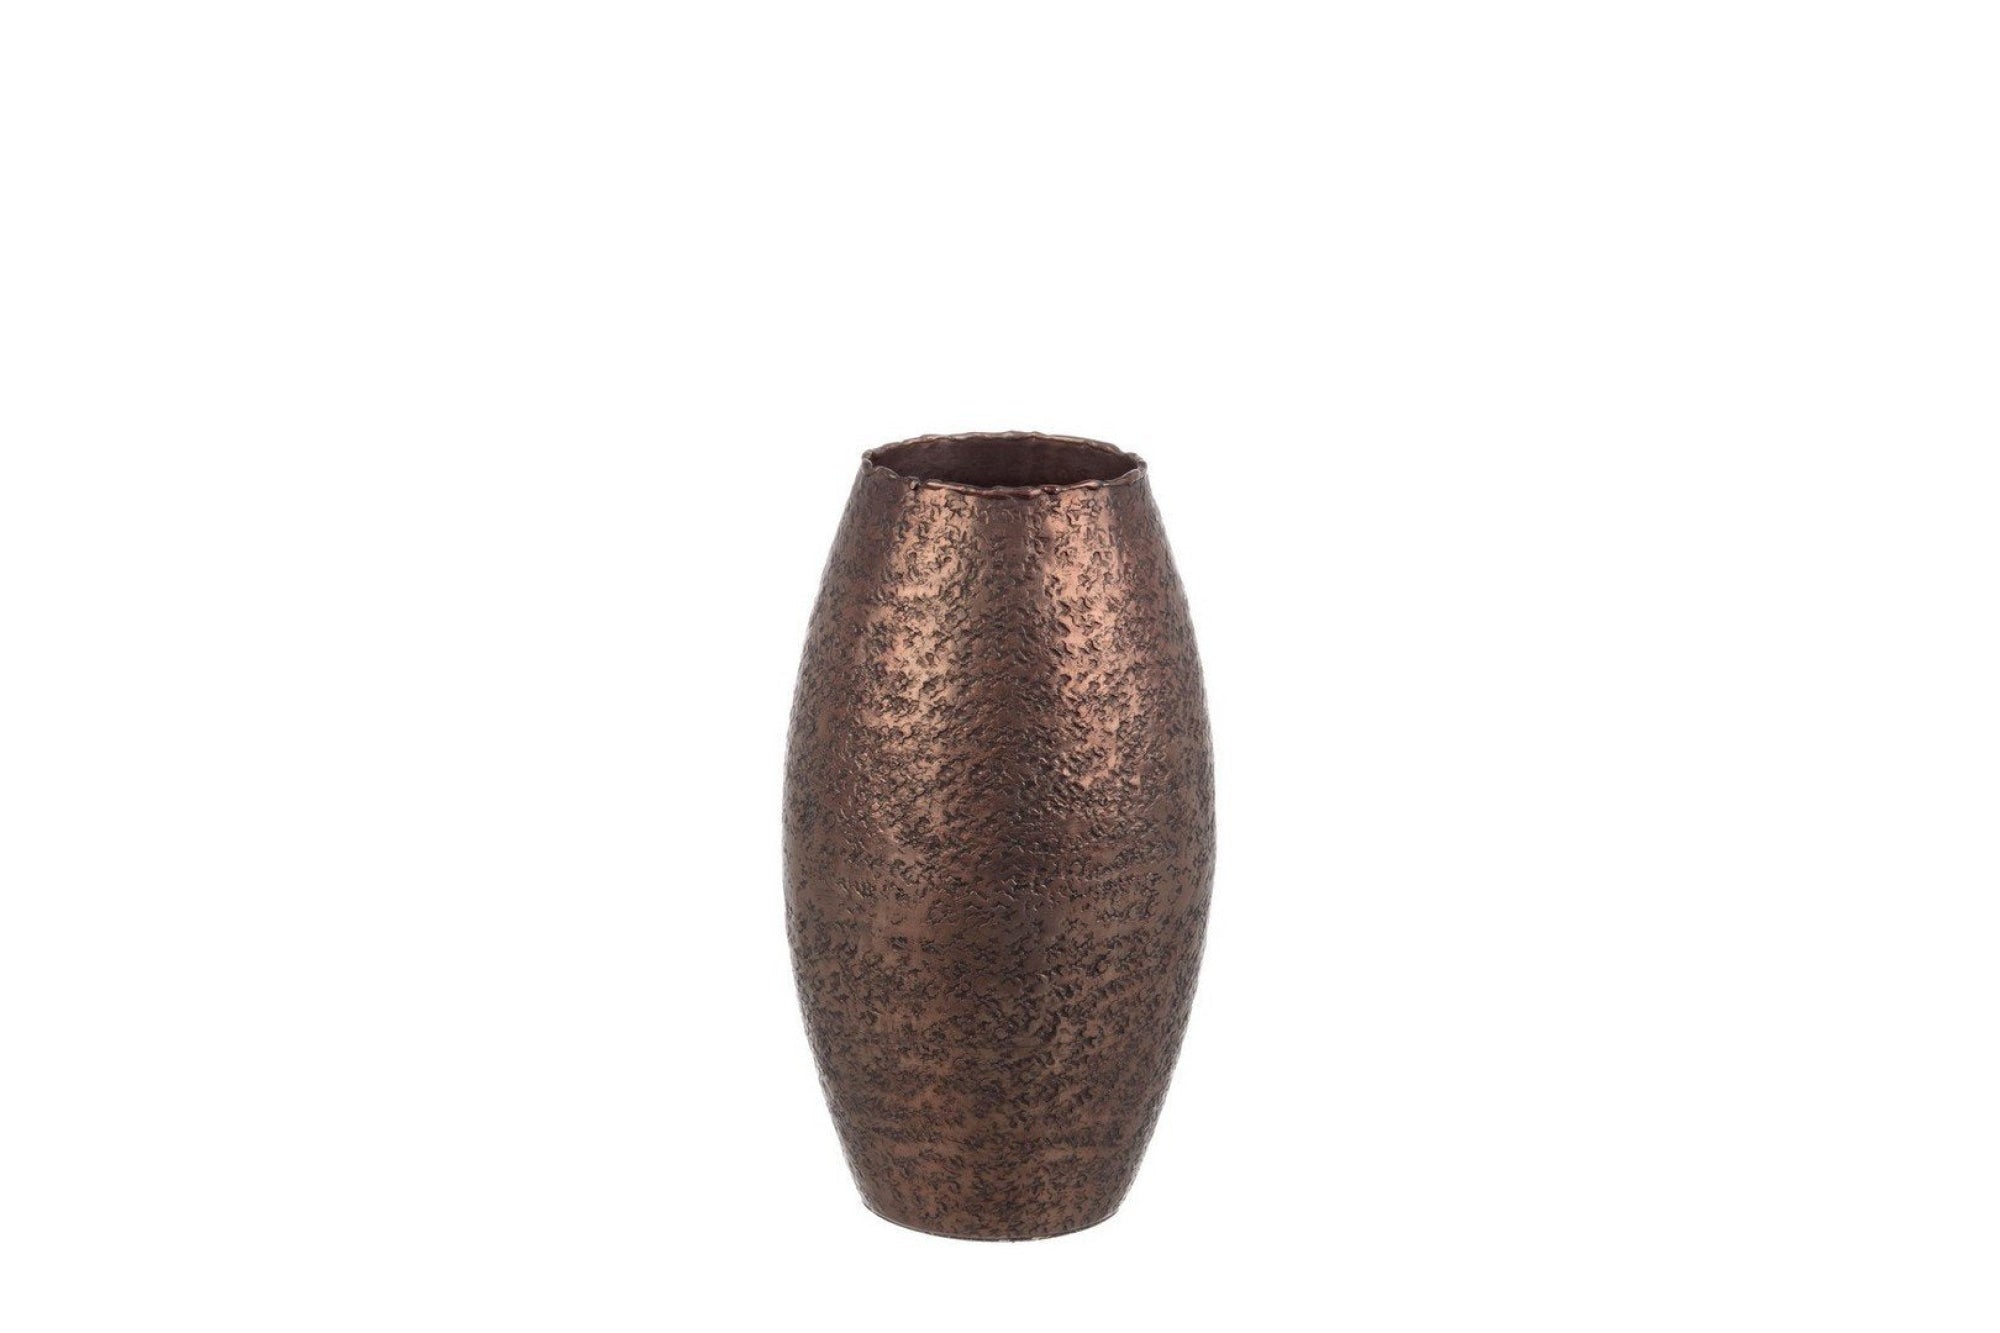 GRACEFUL bronz alumínium váza